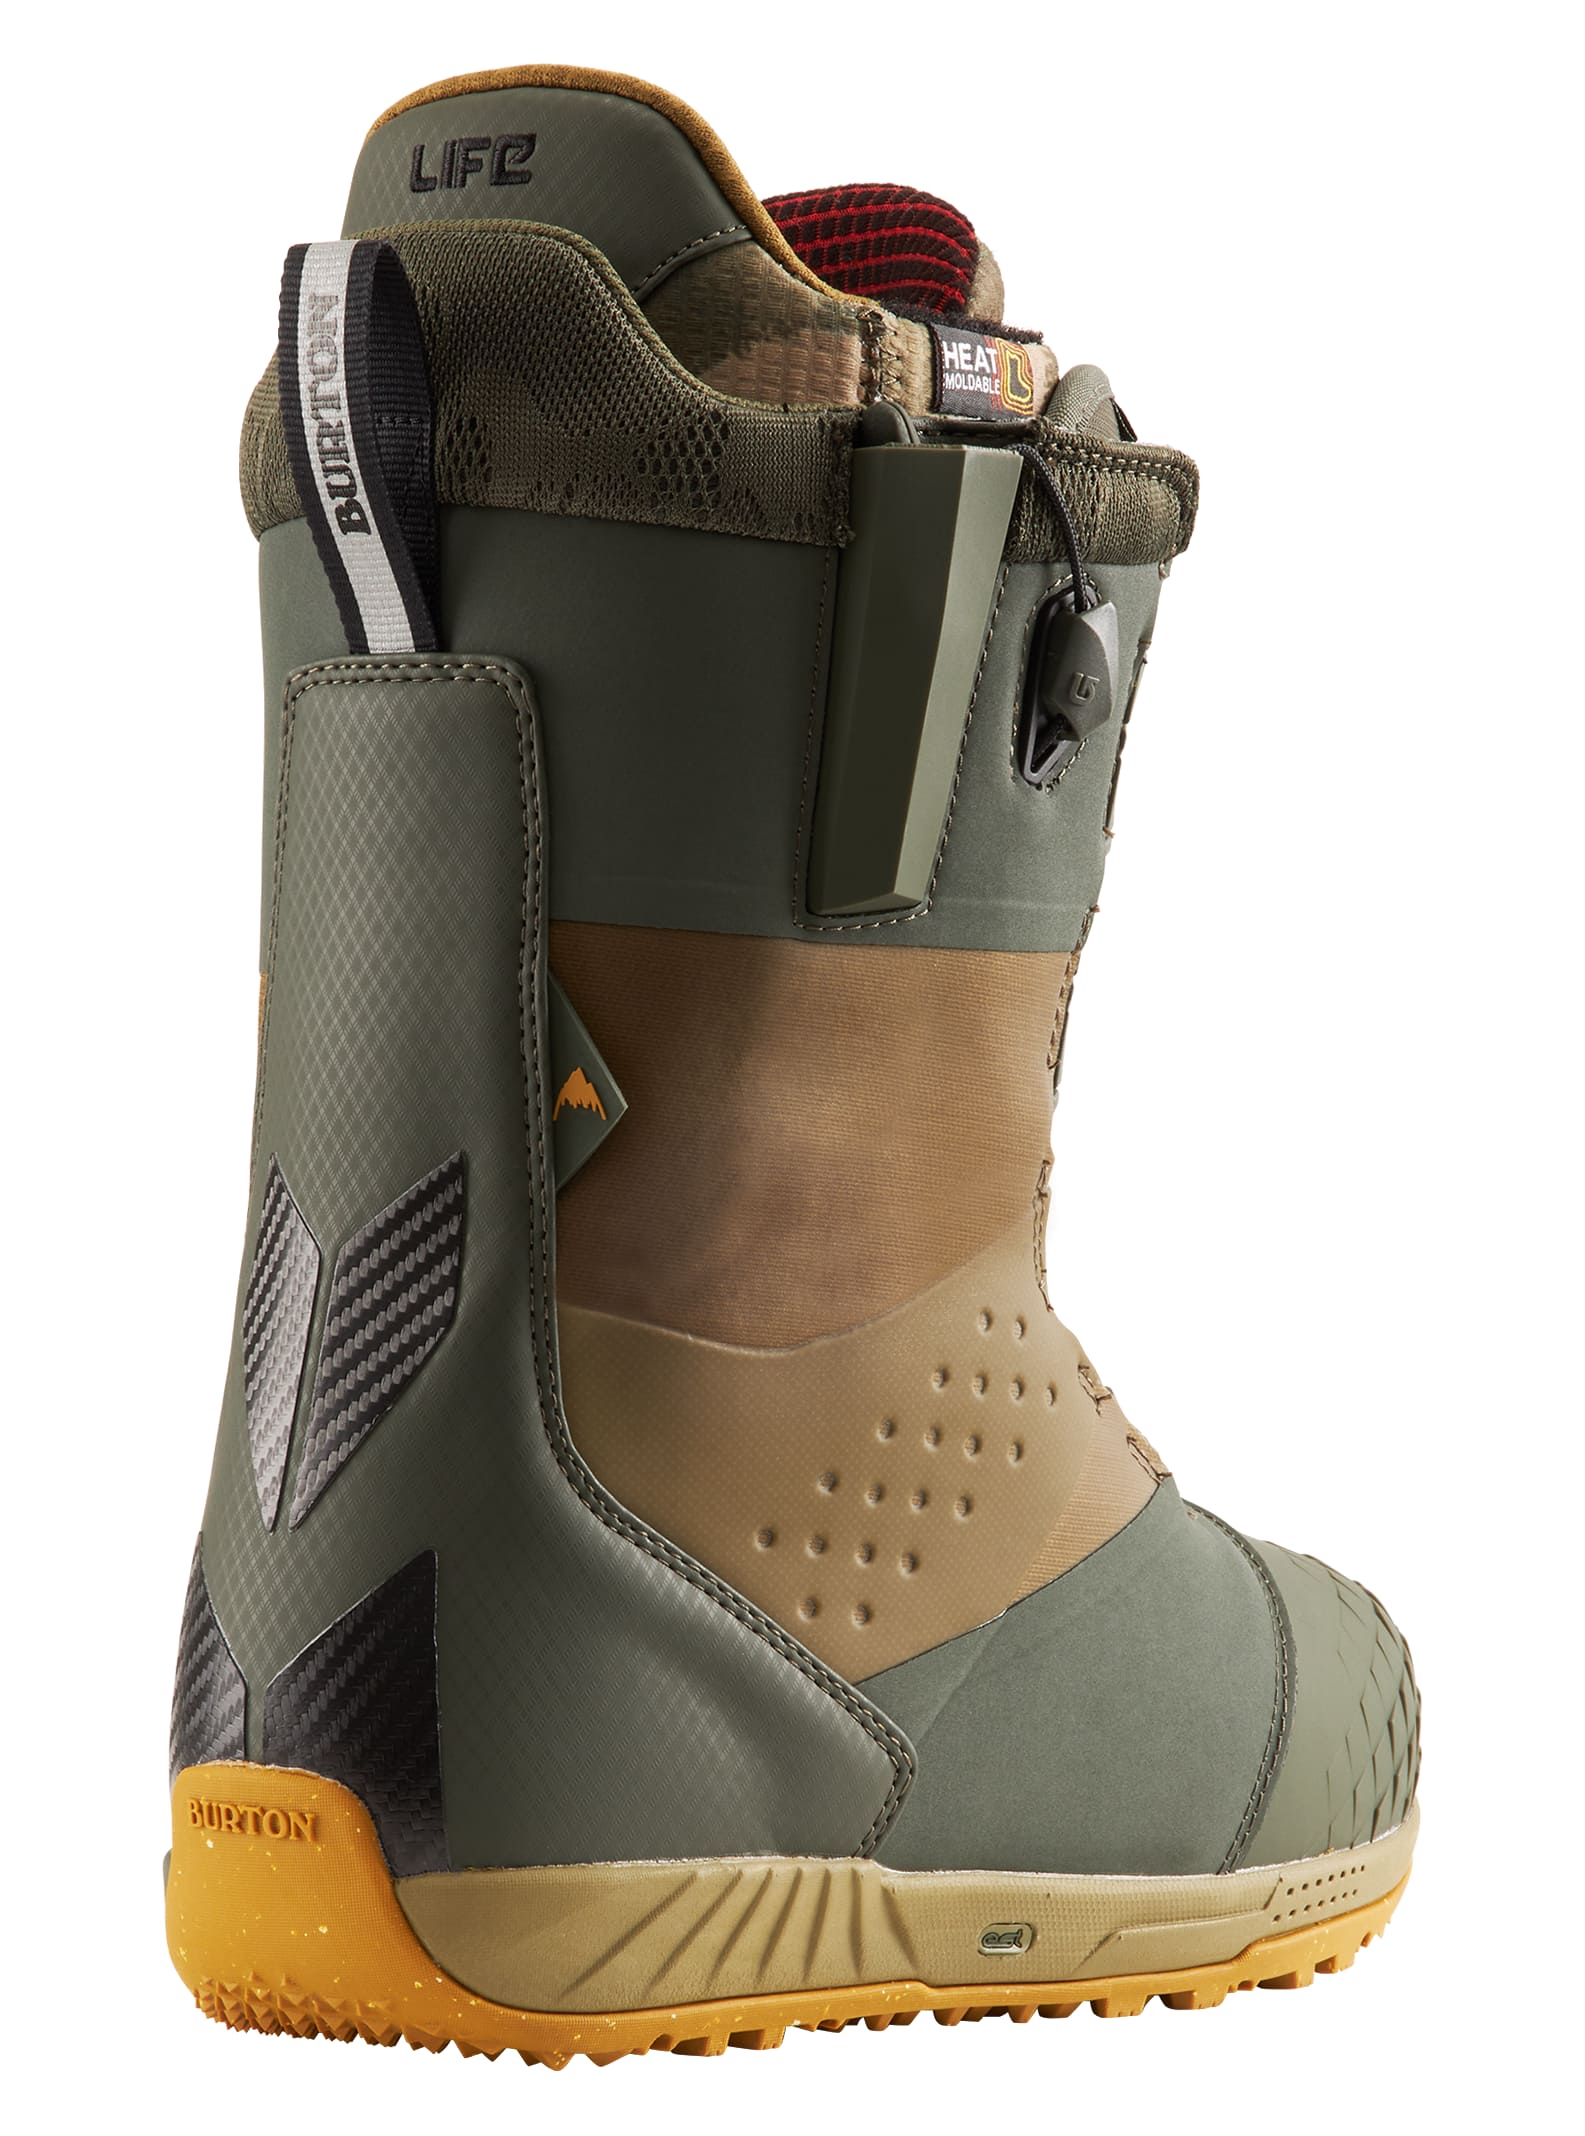 Details about   Burton Ion Snowboard Boots Men's Size 9.5 